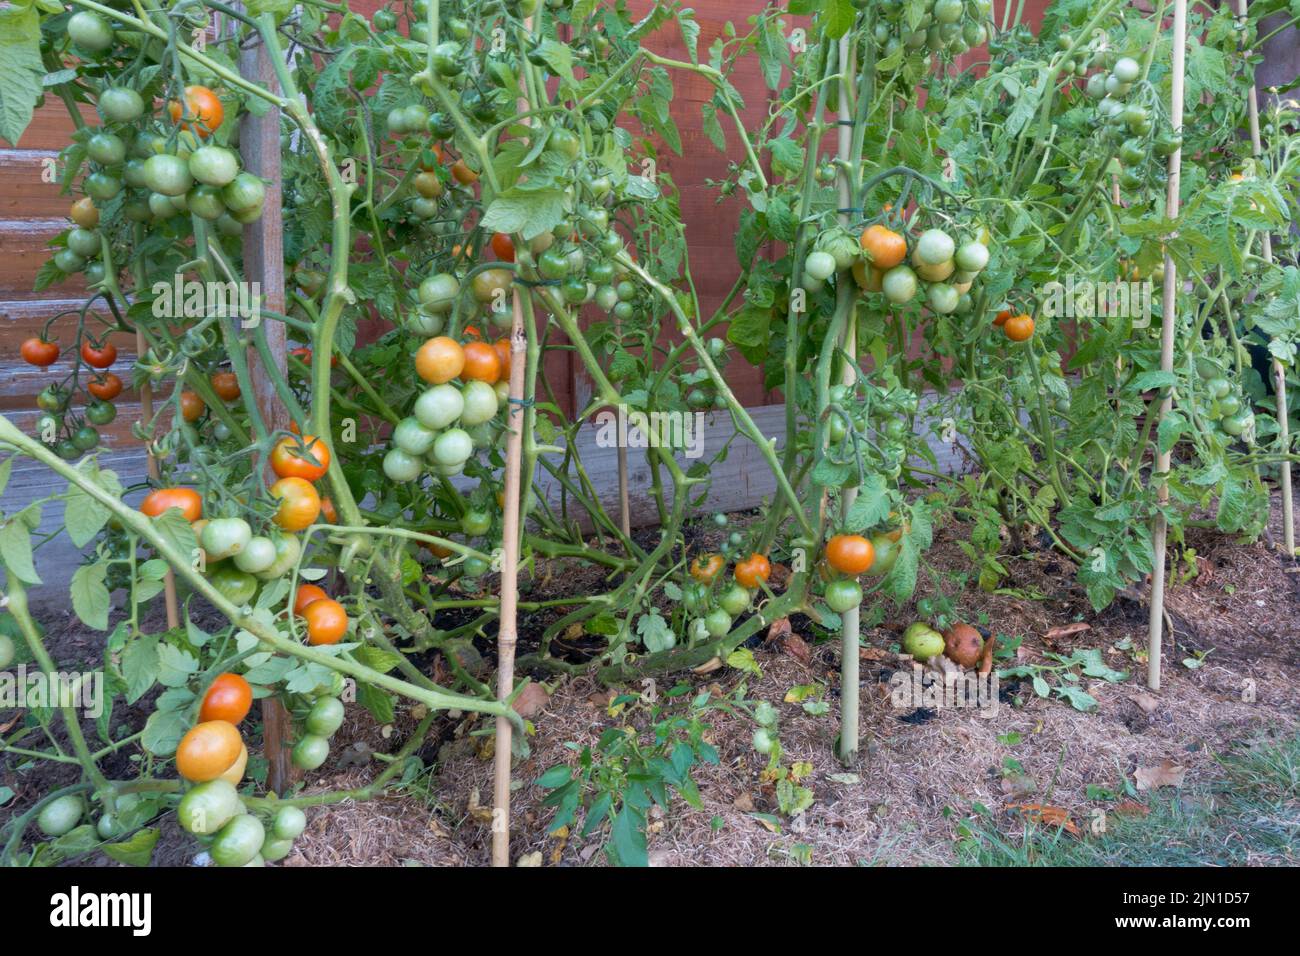 Les plants de tomate pient une grande quantité de fruits sur la plante et les feuilles sont élaguées Banque D'Images